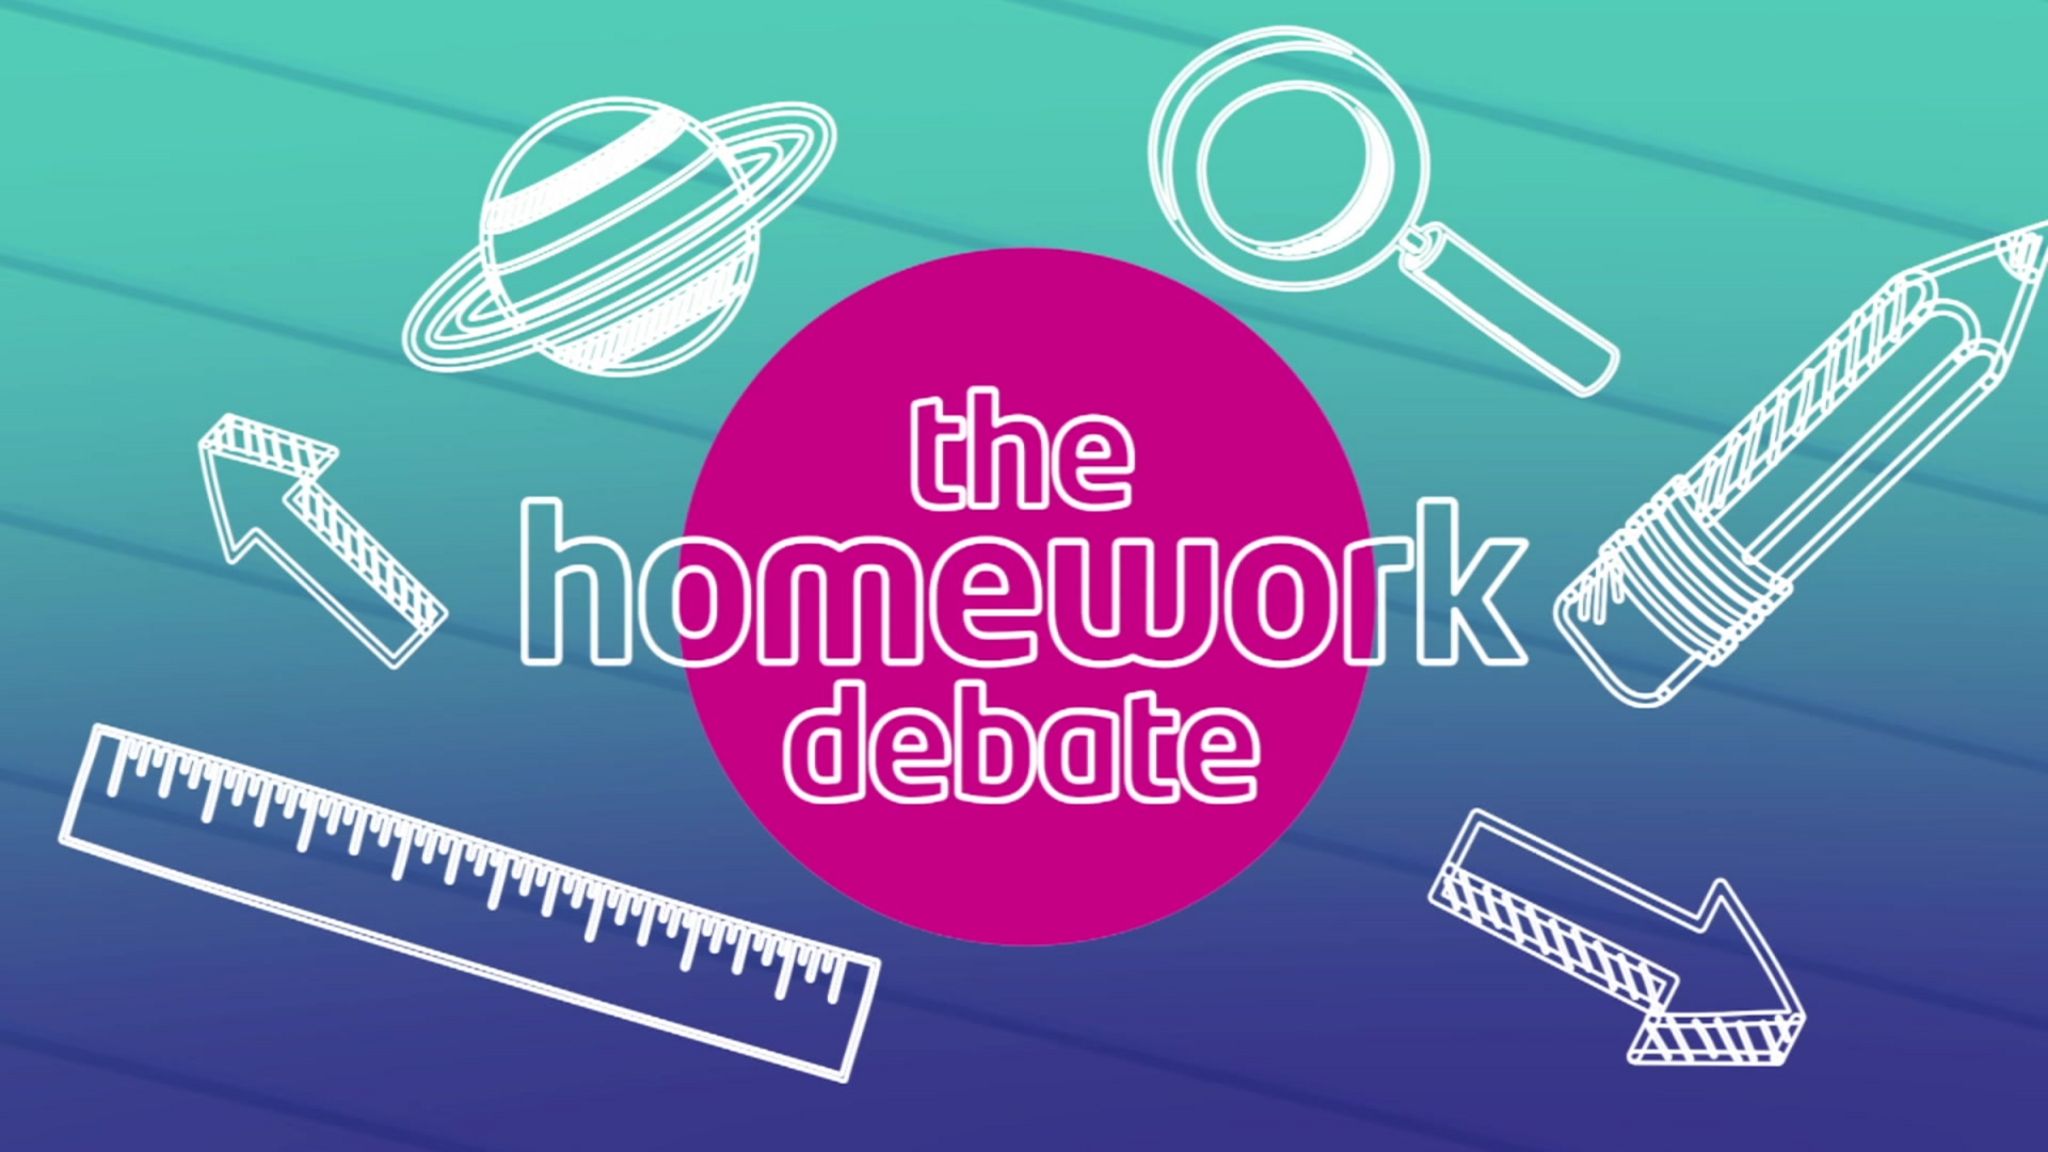 Homework debate graphic